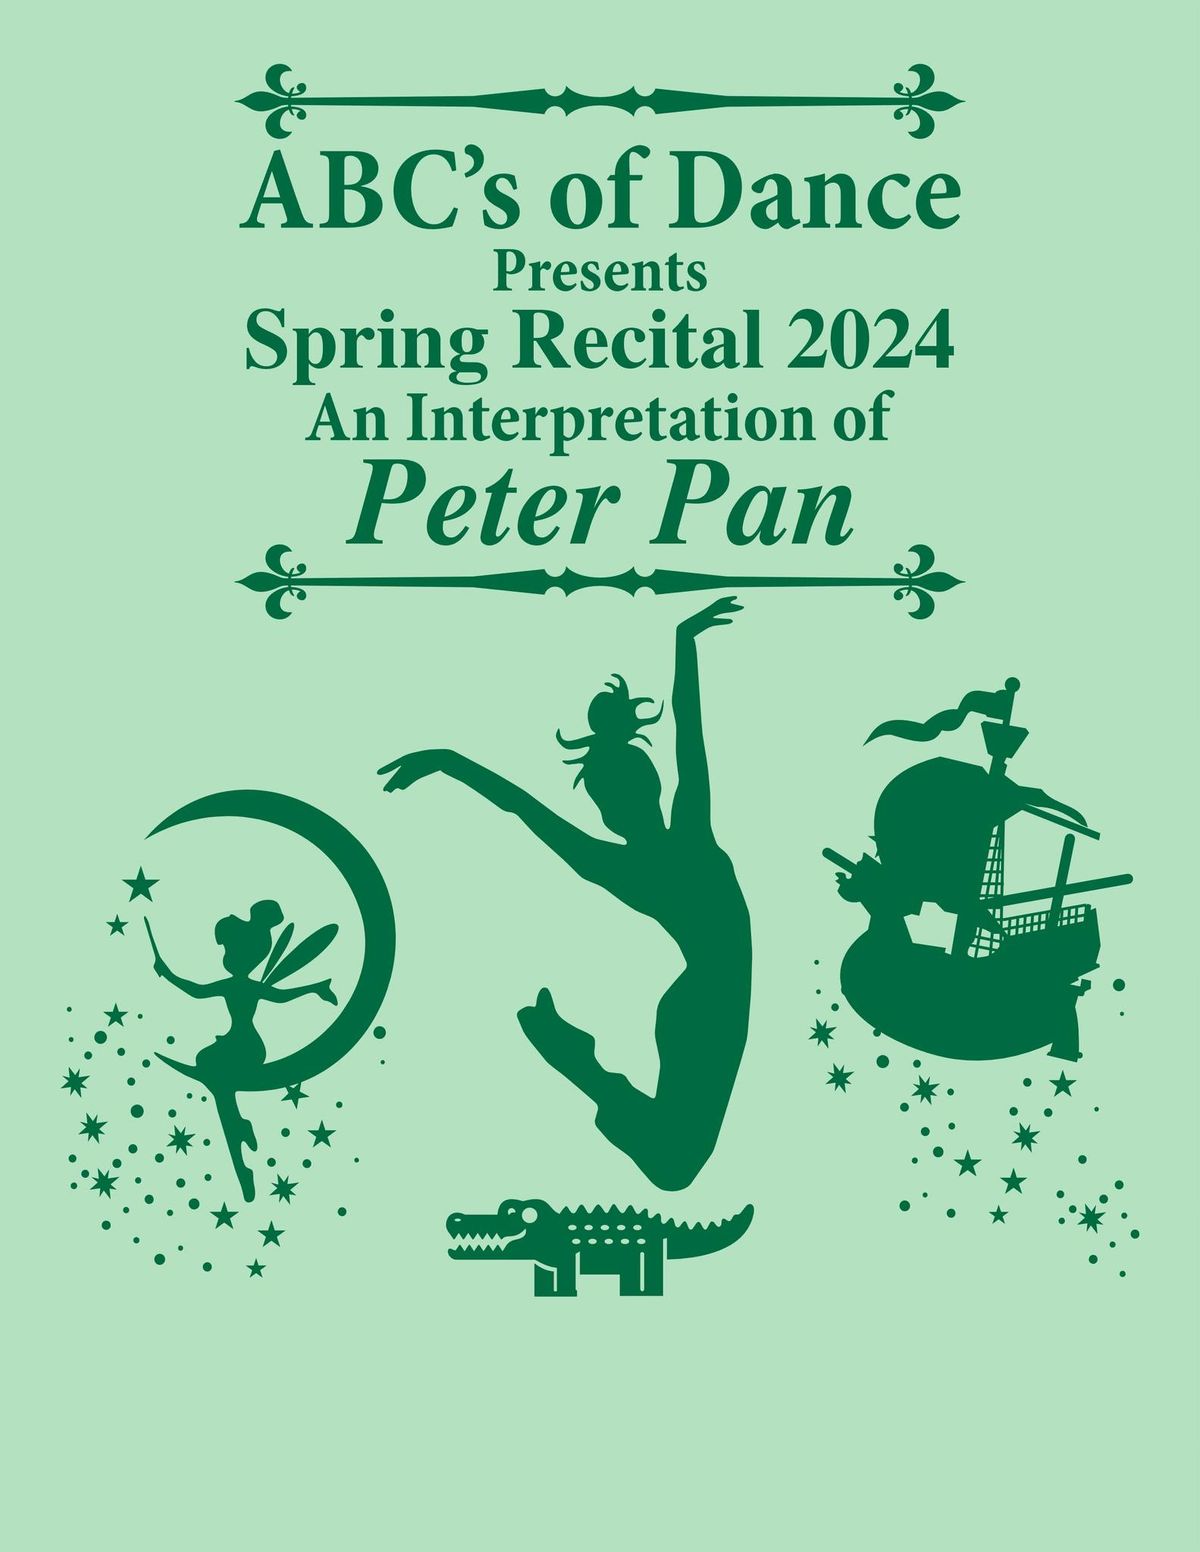 An Interpretation of "Peter Pan"